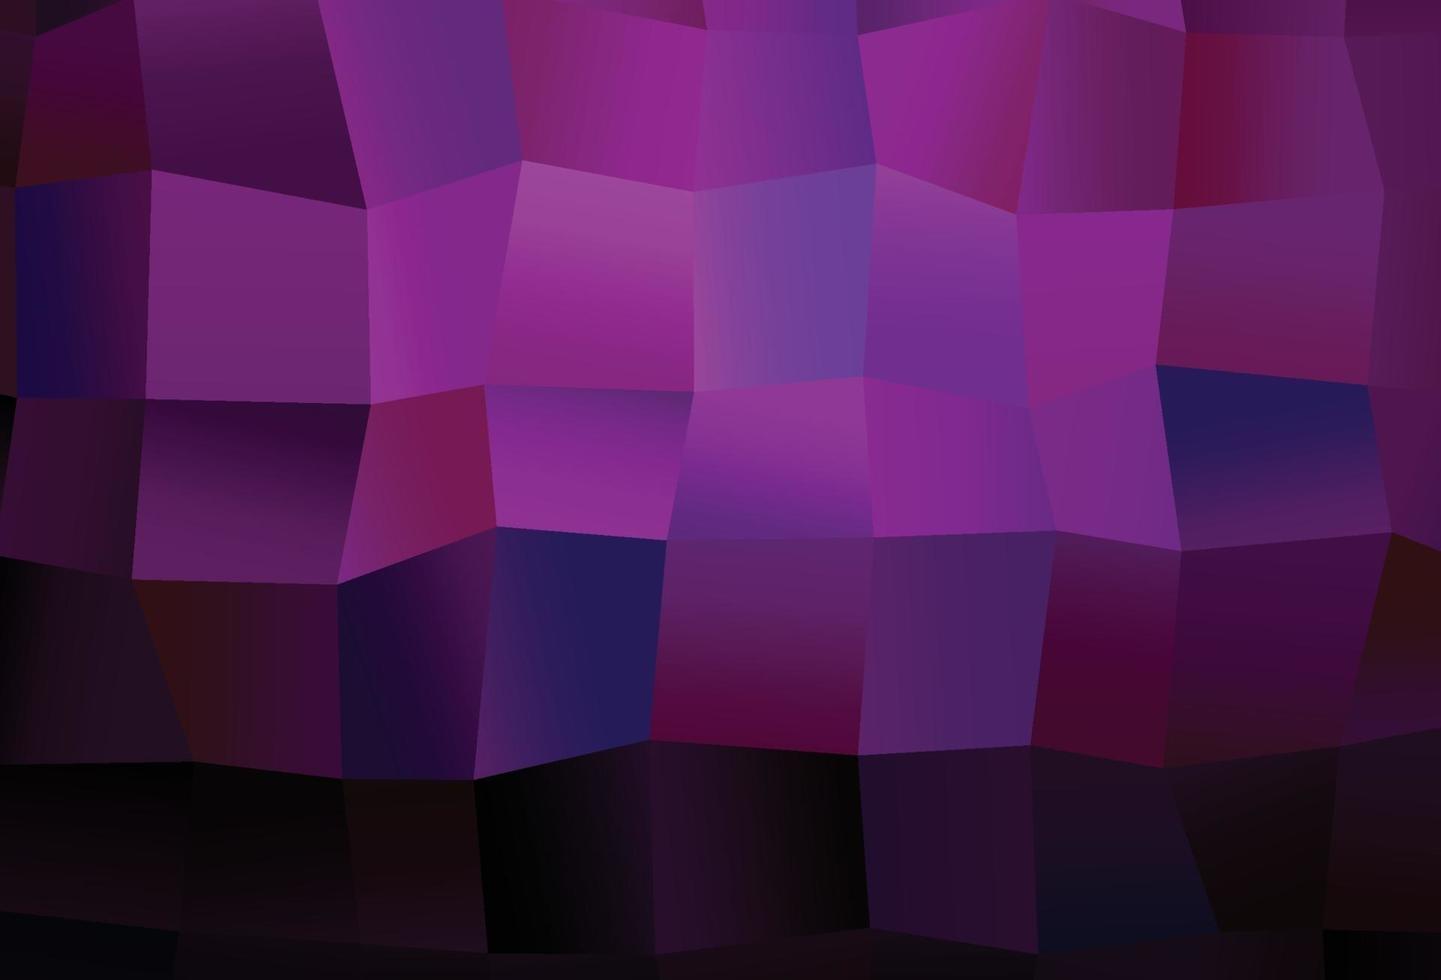 mörk lila vektor mönster med kristaller, rektanglar.